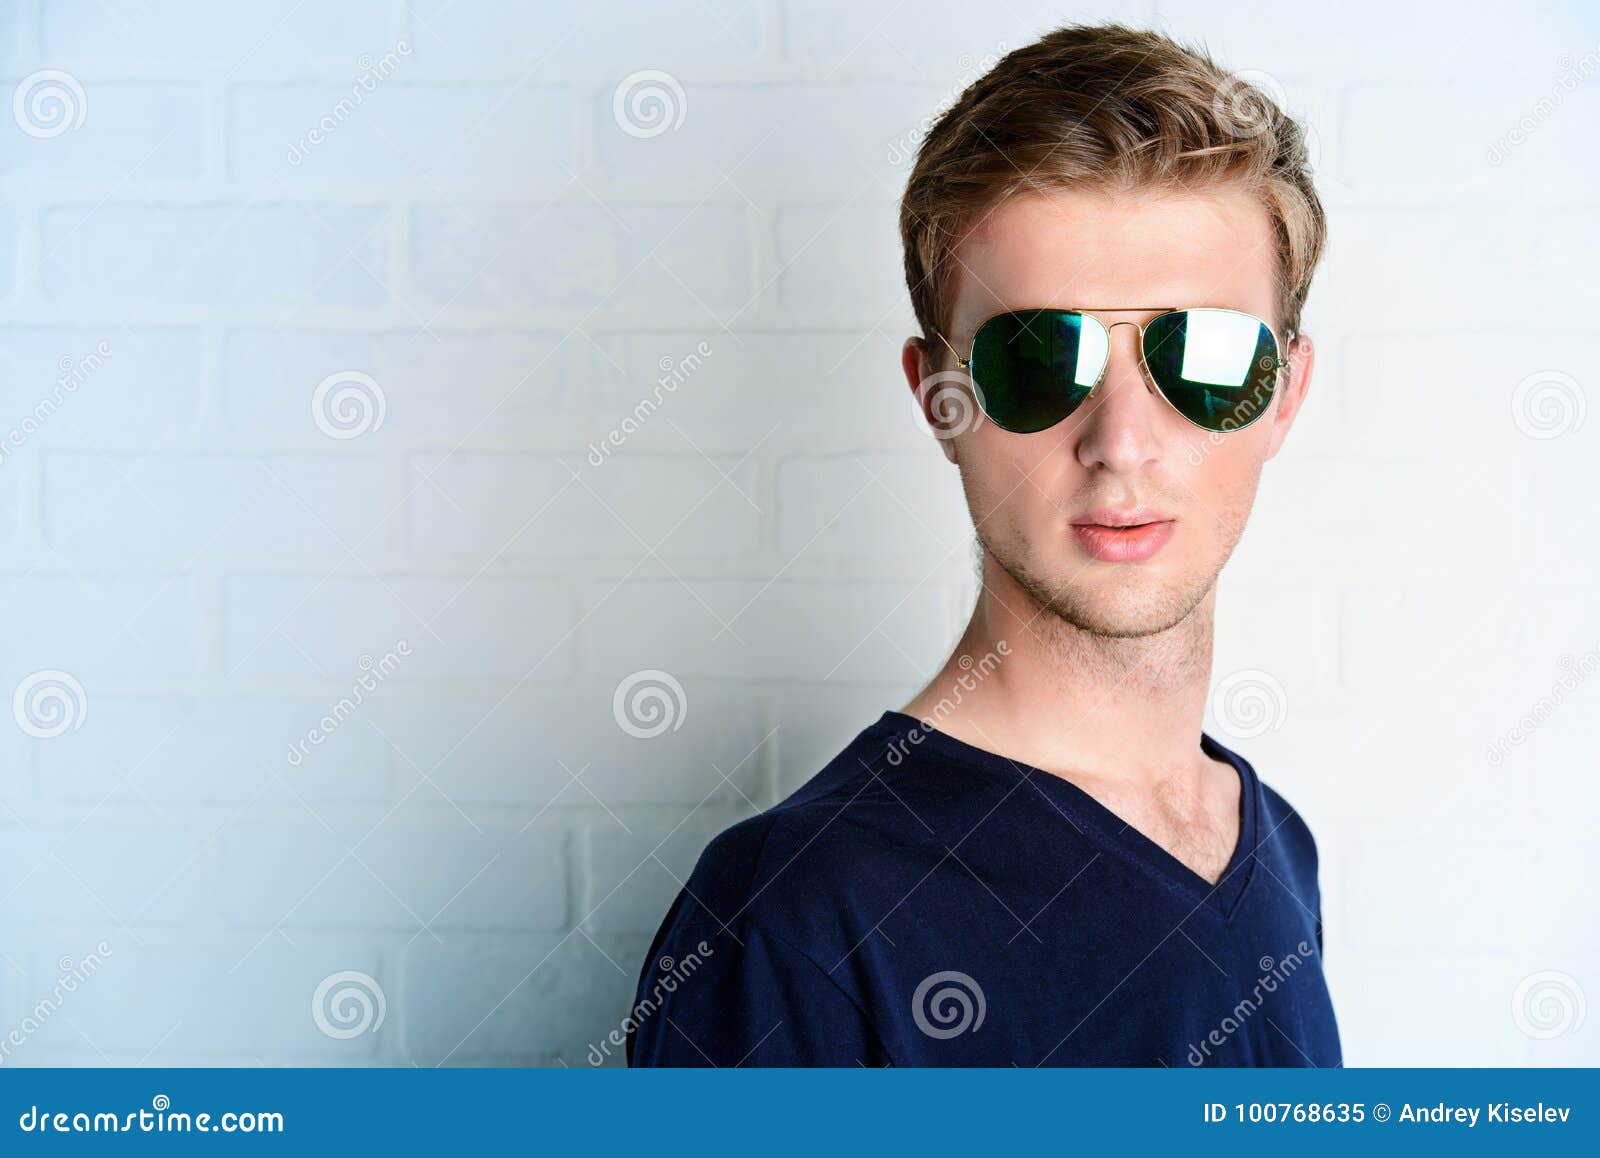 Police sunglasses style stock image. Image of face, eyewear - 100768635